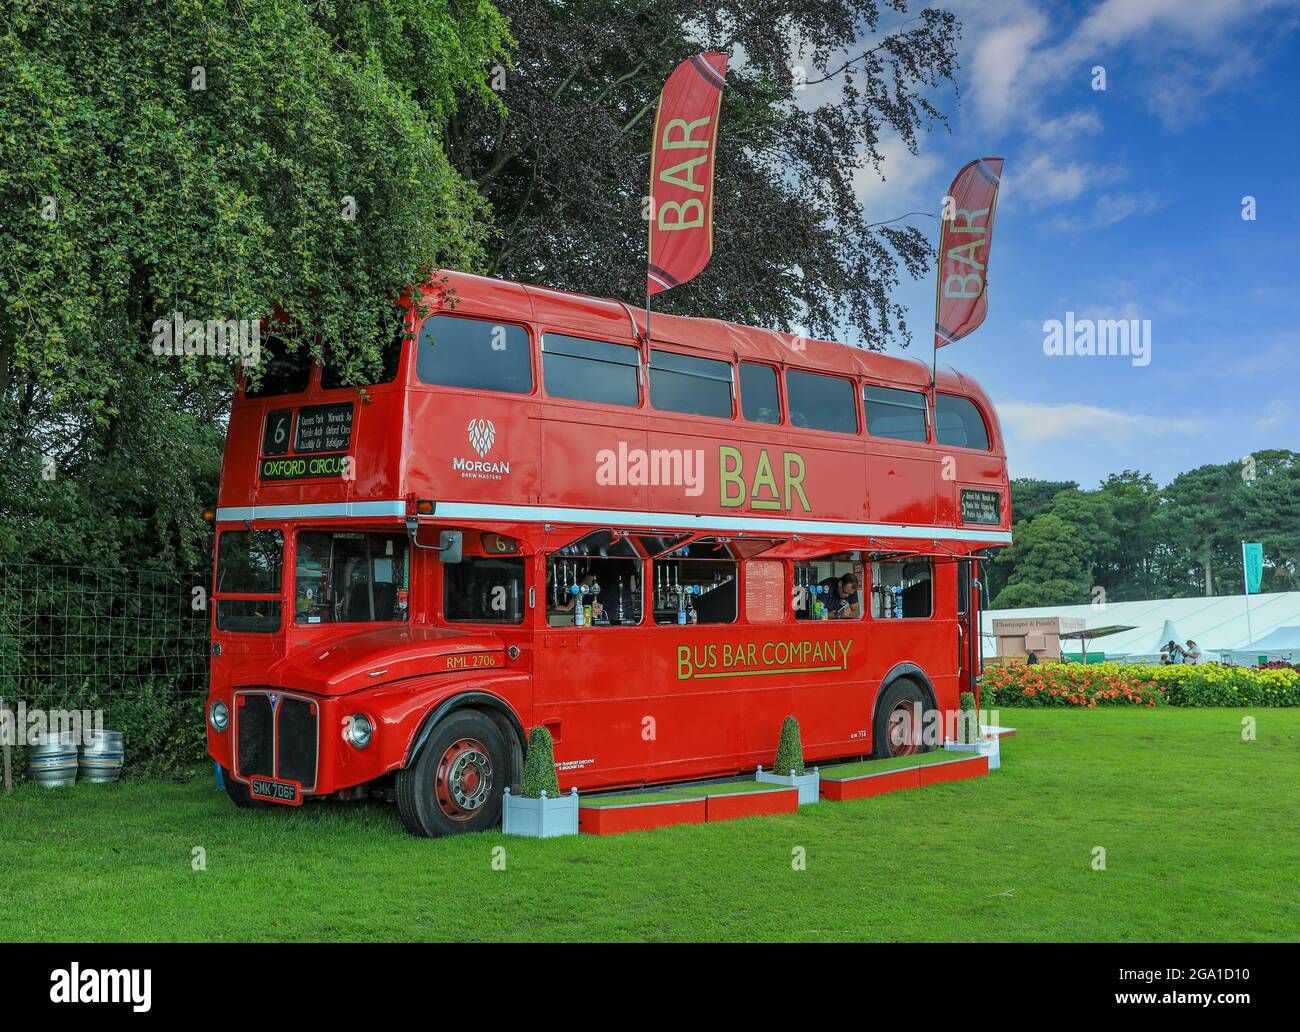 Eine Bar in einem ehemaligen Londoner Doppeldeckerbus in der Tatton Flower Show, Tatton Park, chemhire, England, Großbritannien Stockfoto